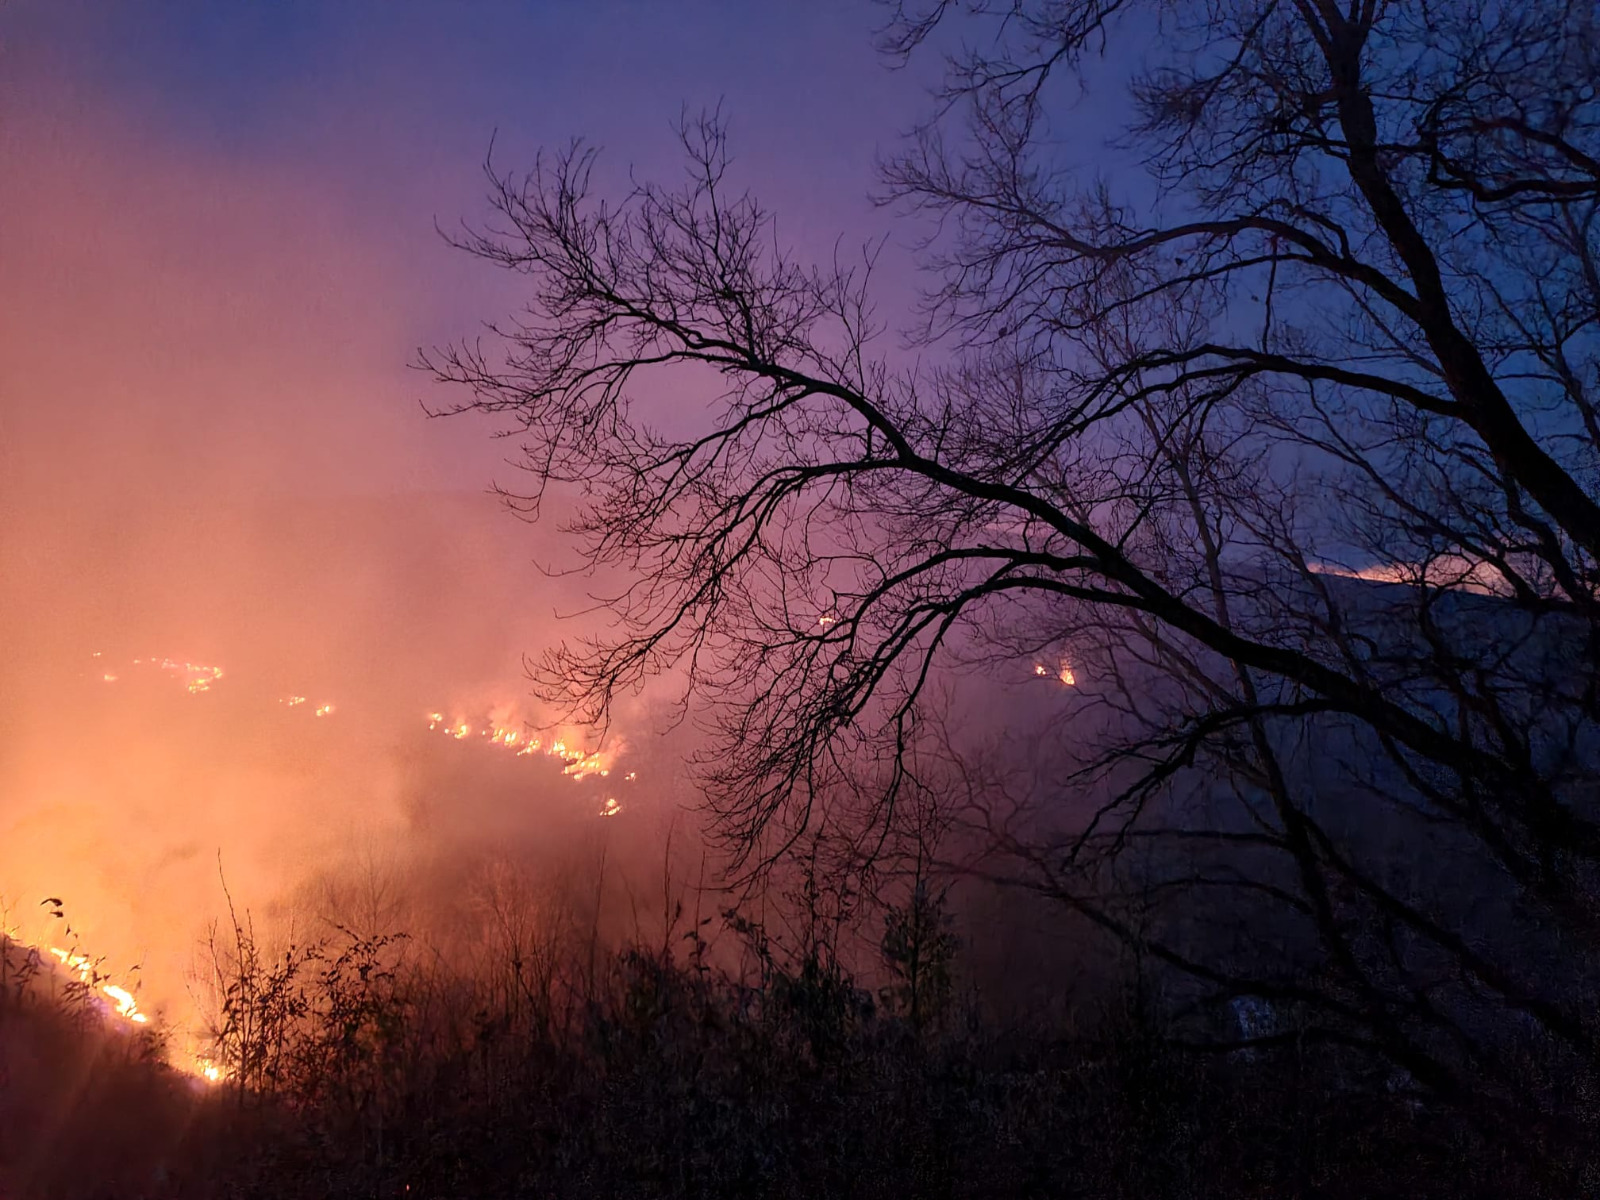 Arderea vegetaţiei uscate poată fi făcută numai după obţinerea permisului de lucru cu focul